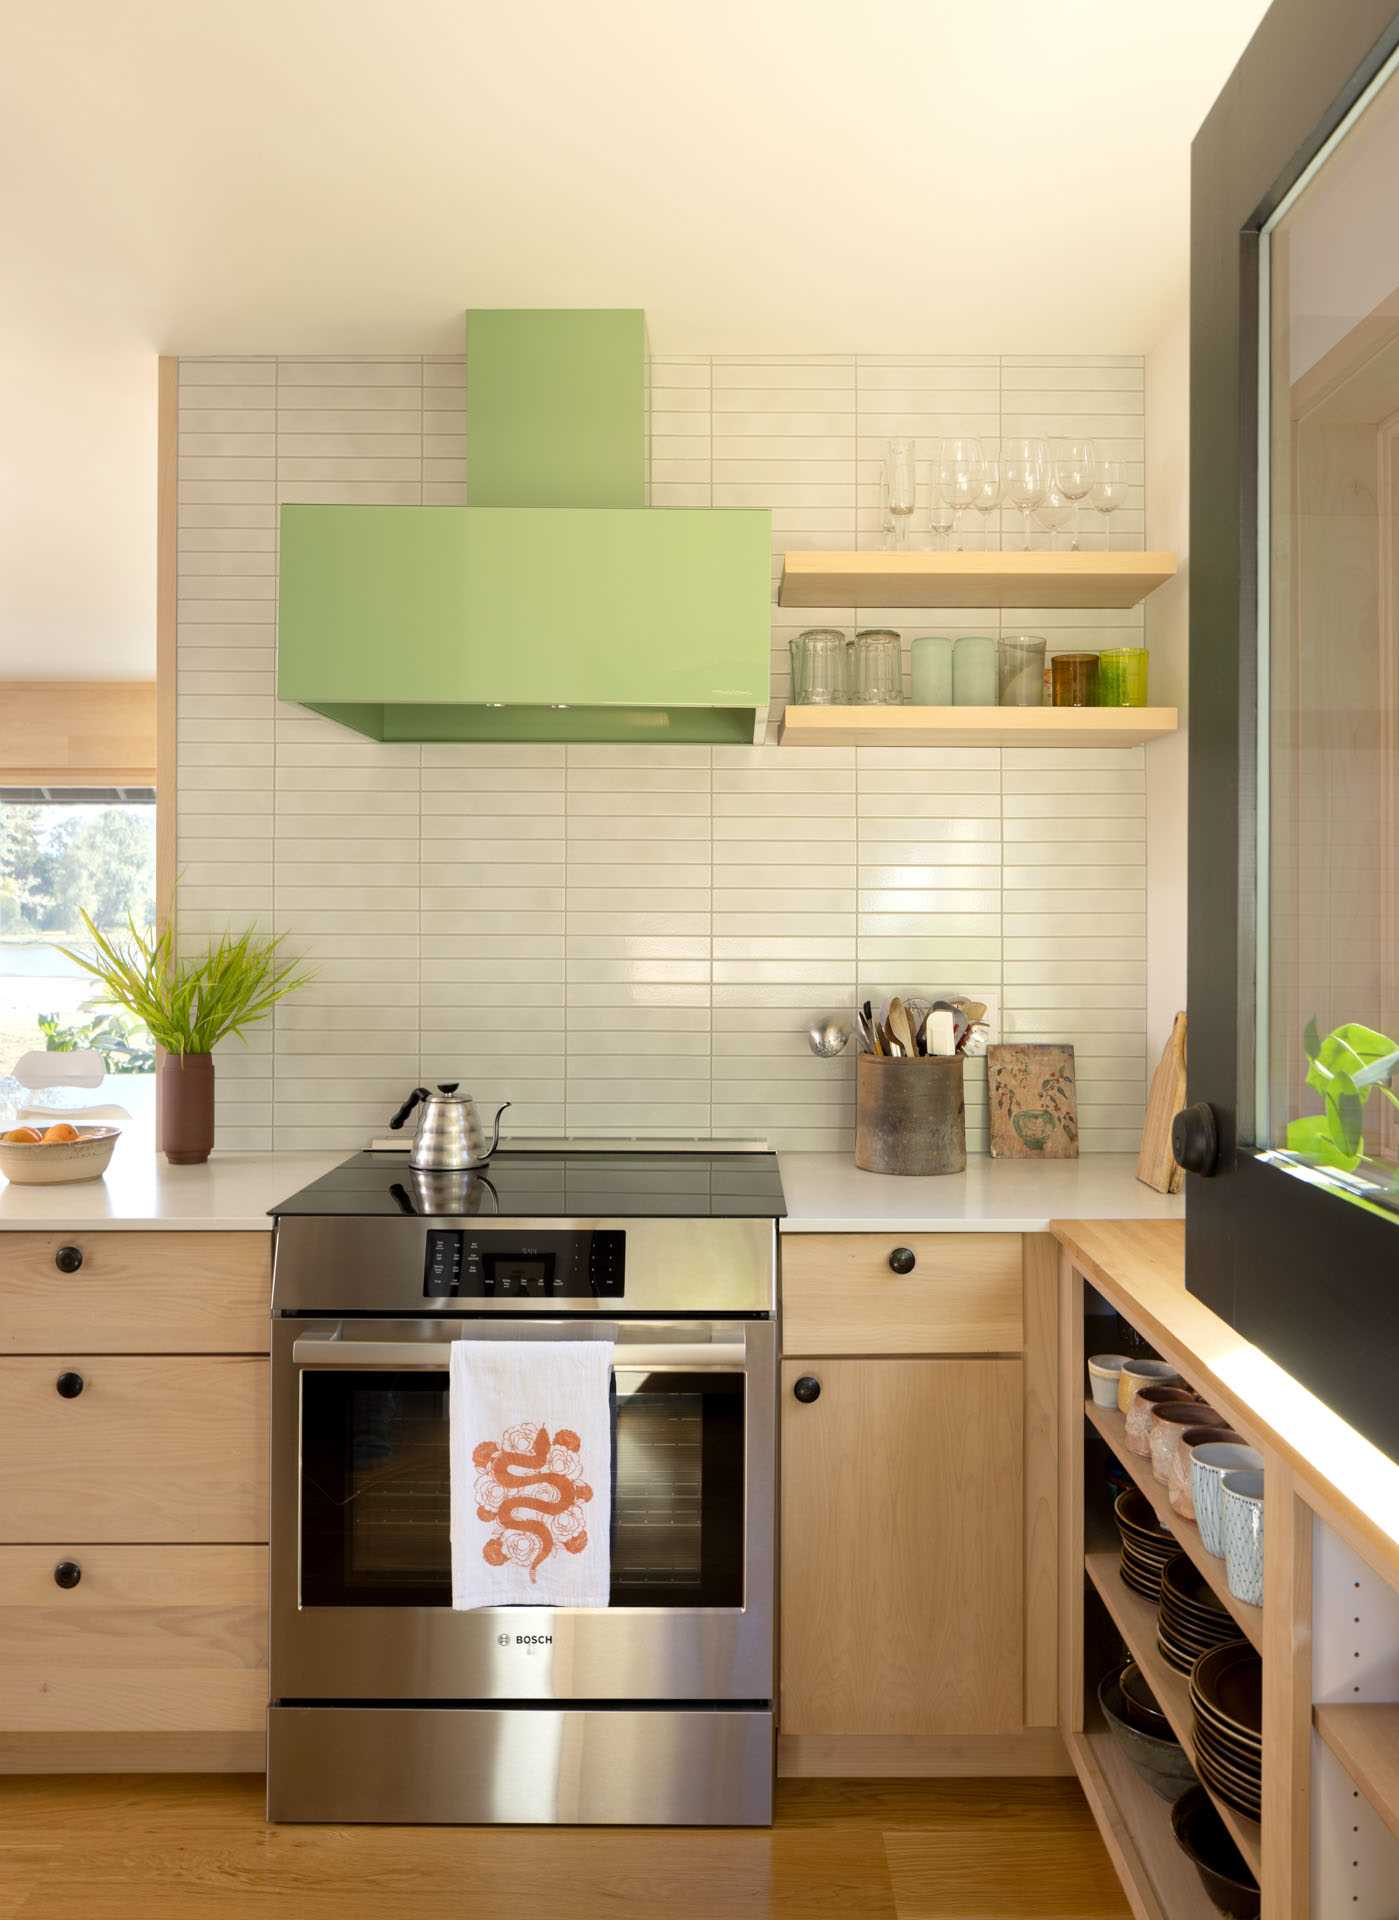 آشپزخانه بازسازی‌شده با کابینت‌های چوبی سبک و قفسه‌های باز، هود سبز رنگ پاستلی، دیواری با کاشی‌های روشن، و کف‌های چوبی.  یک درب هلندی نیز اضافه شد.